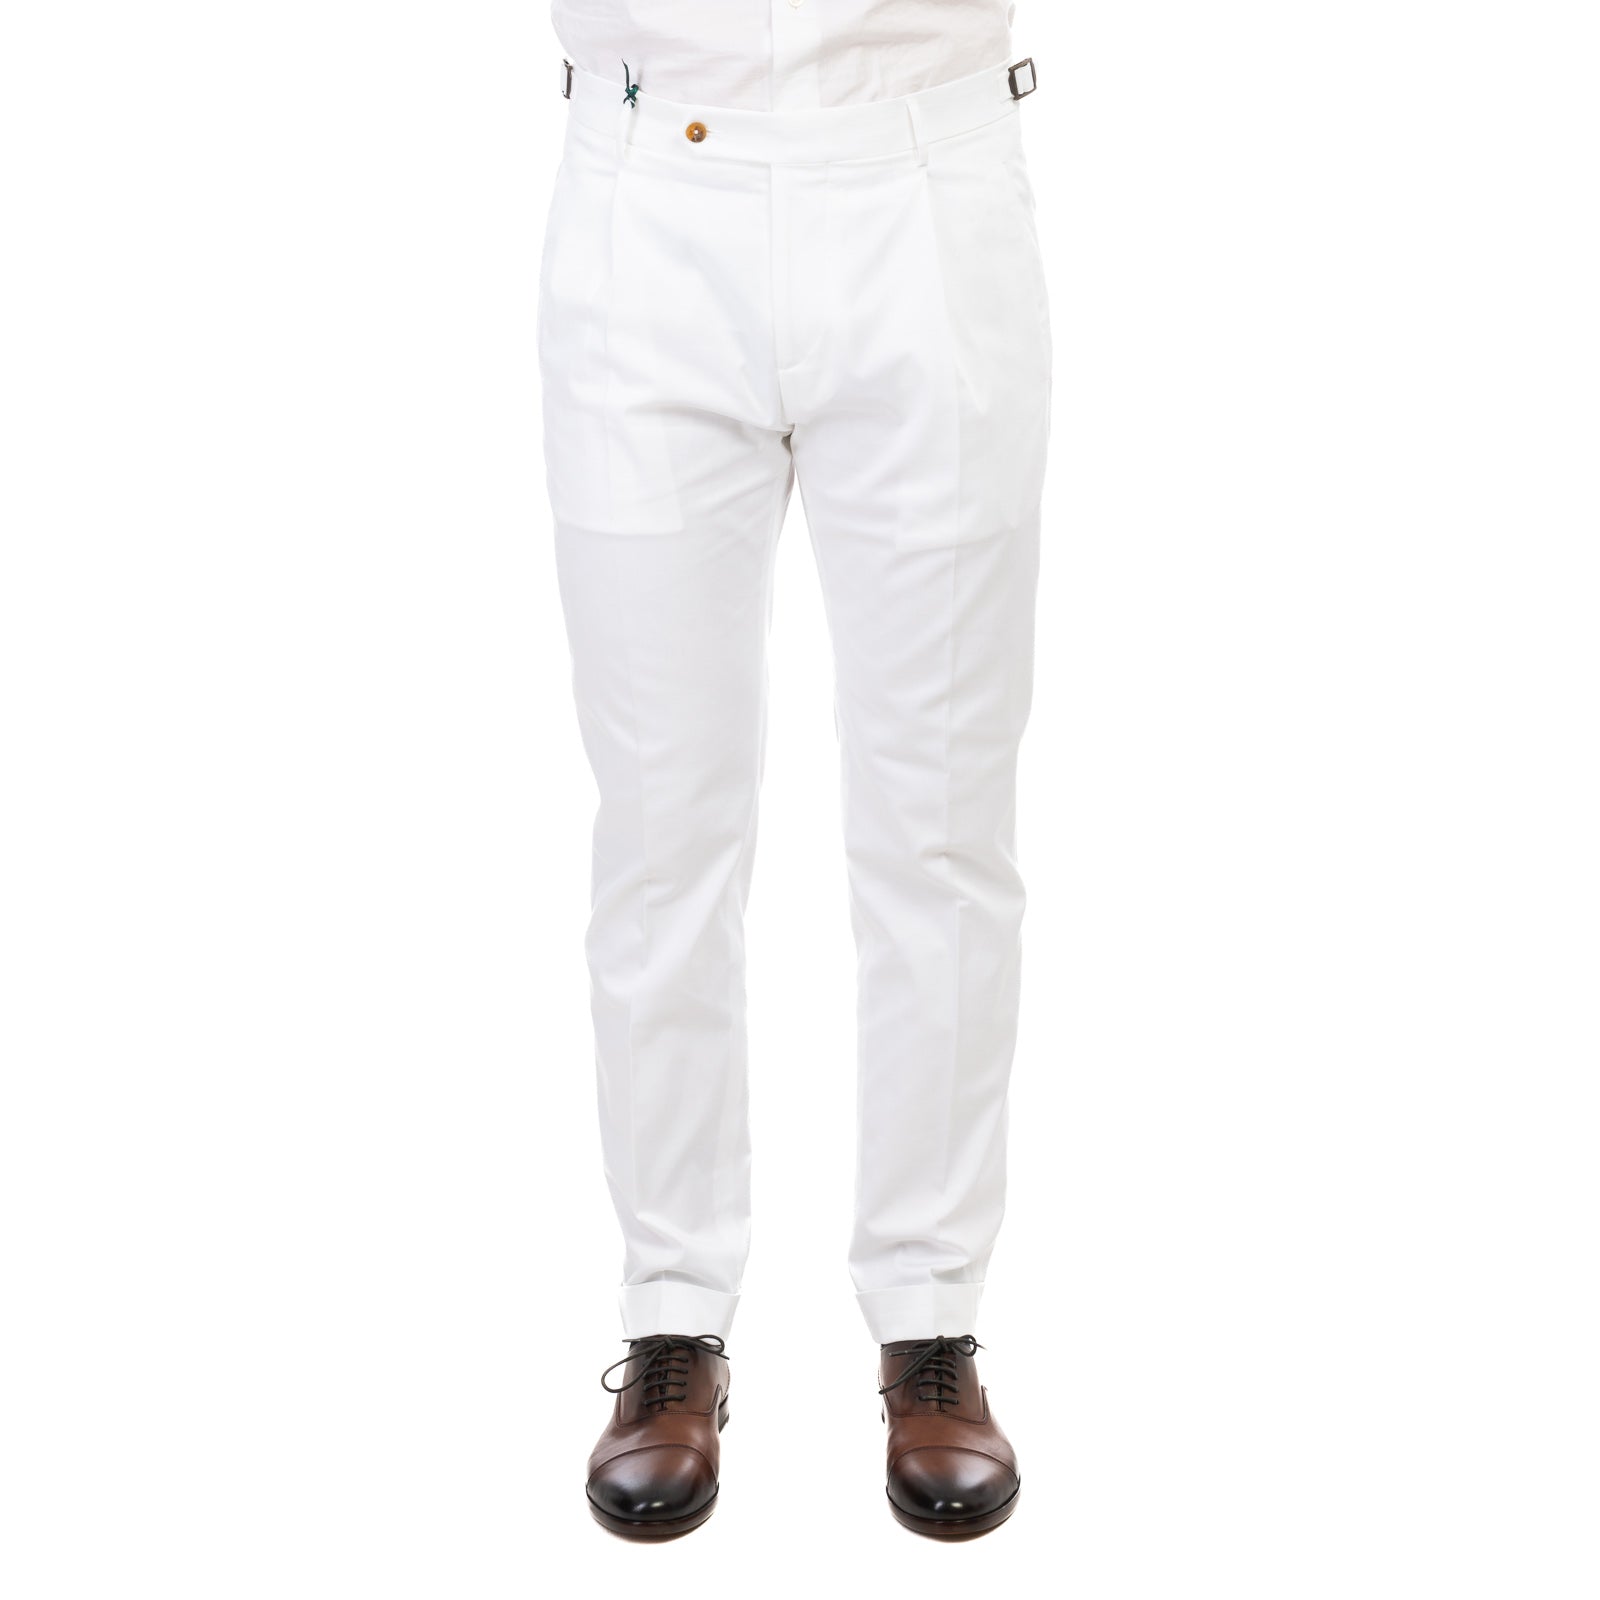 Pantalone BERWICH
Bianco